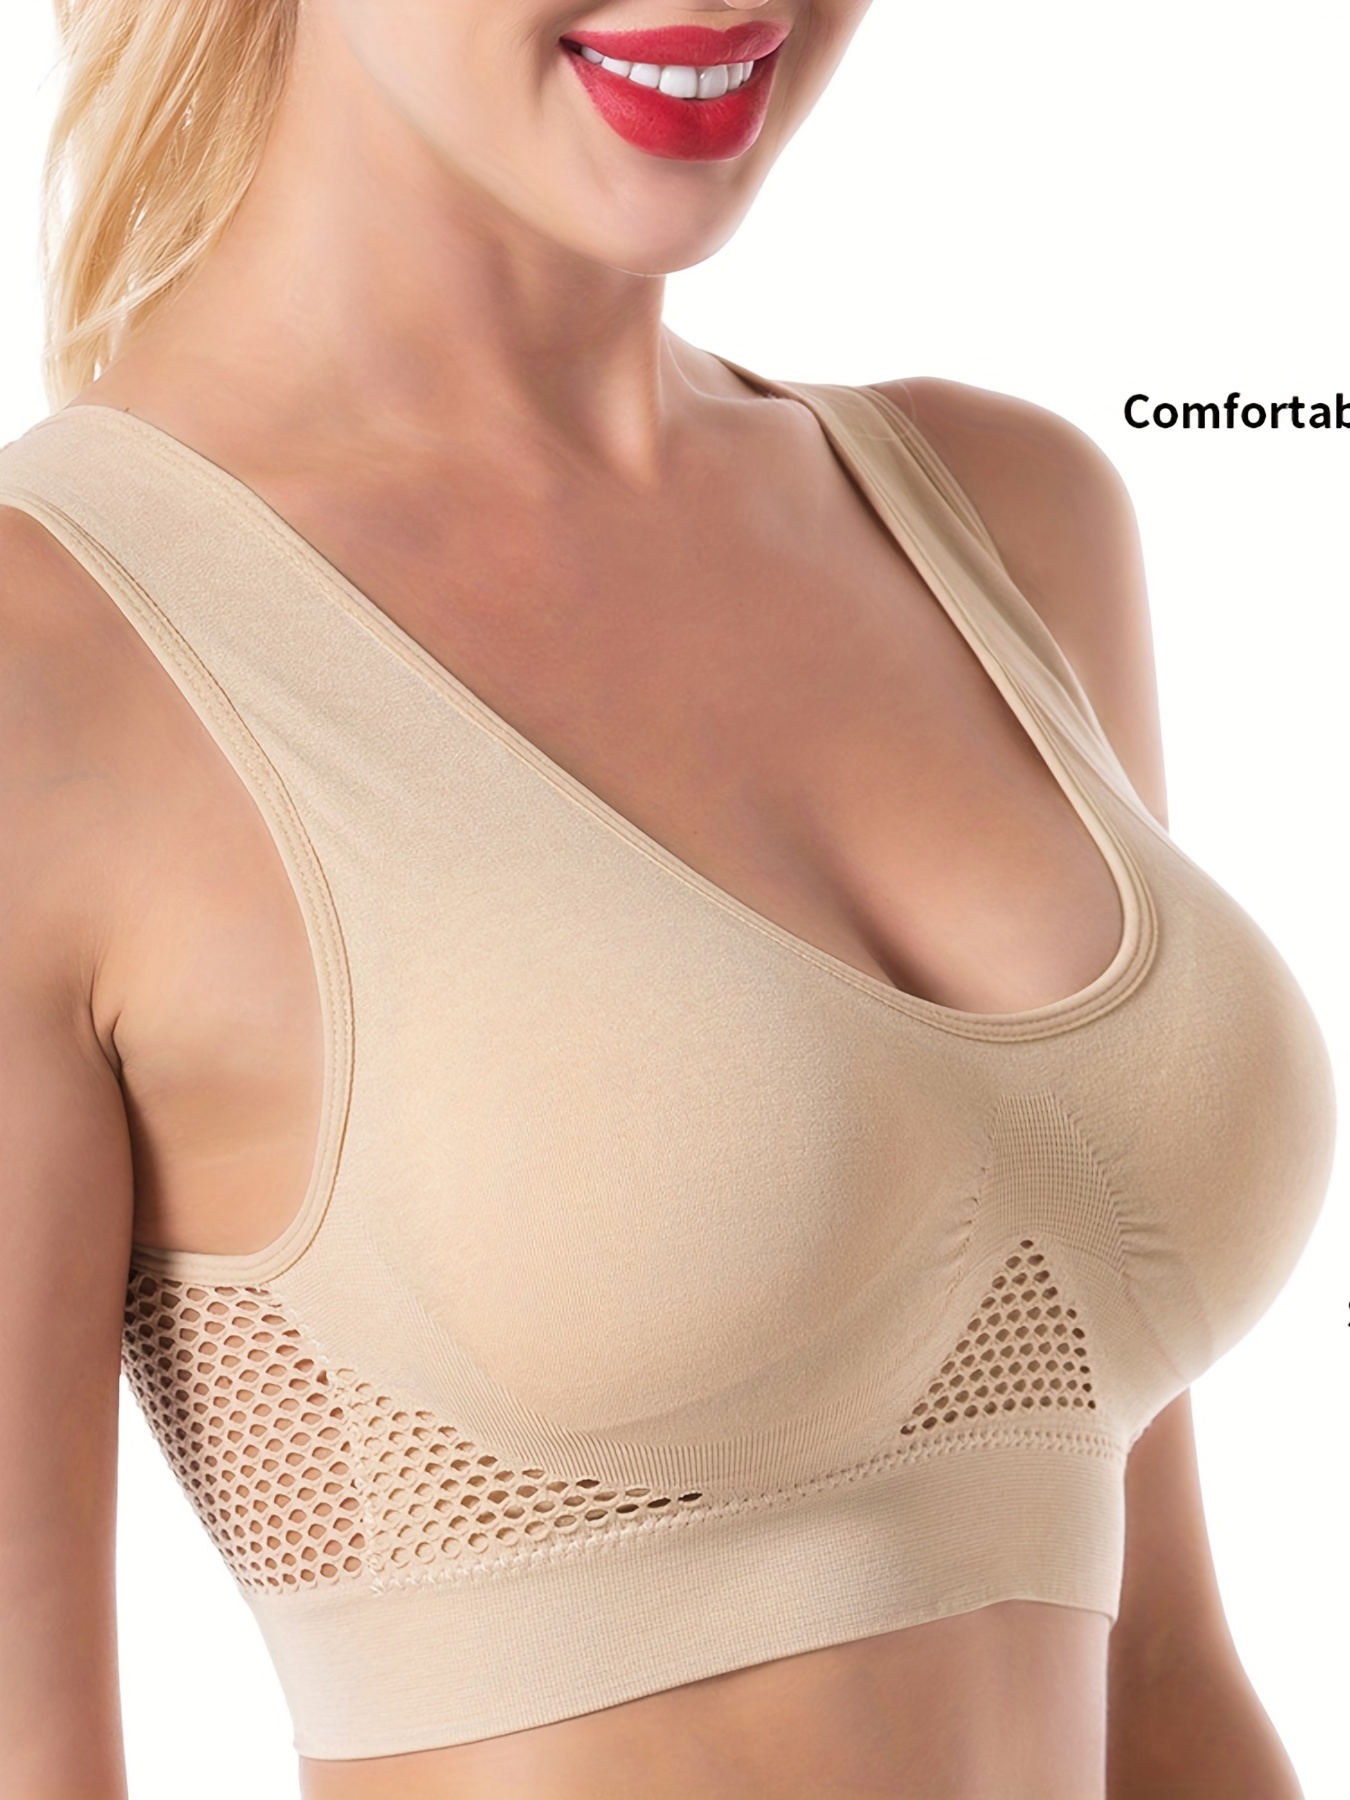 Yoga tops Wear front zipper sports underwear women shockproof running  fitness bra anti sagging can wear Yoga vest